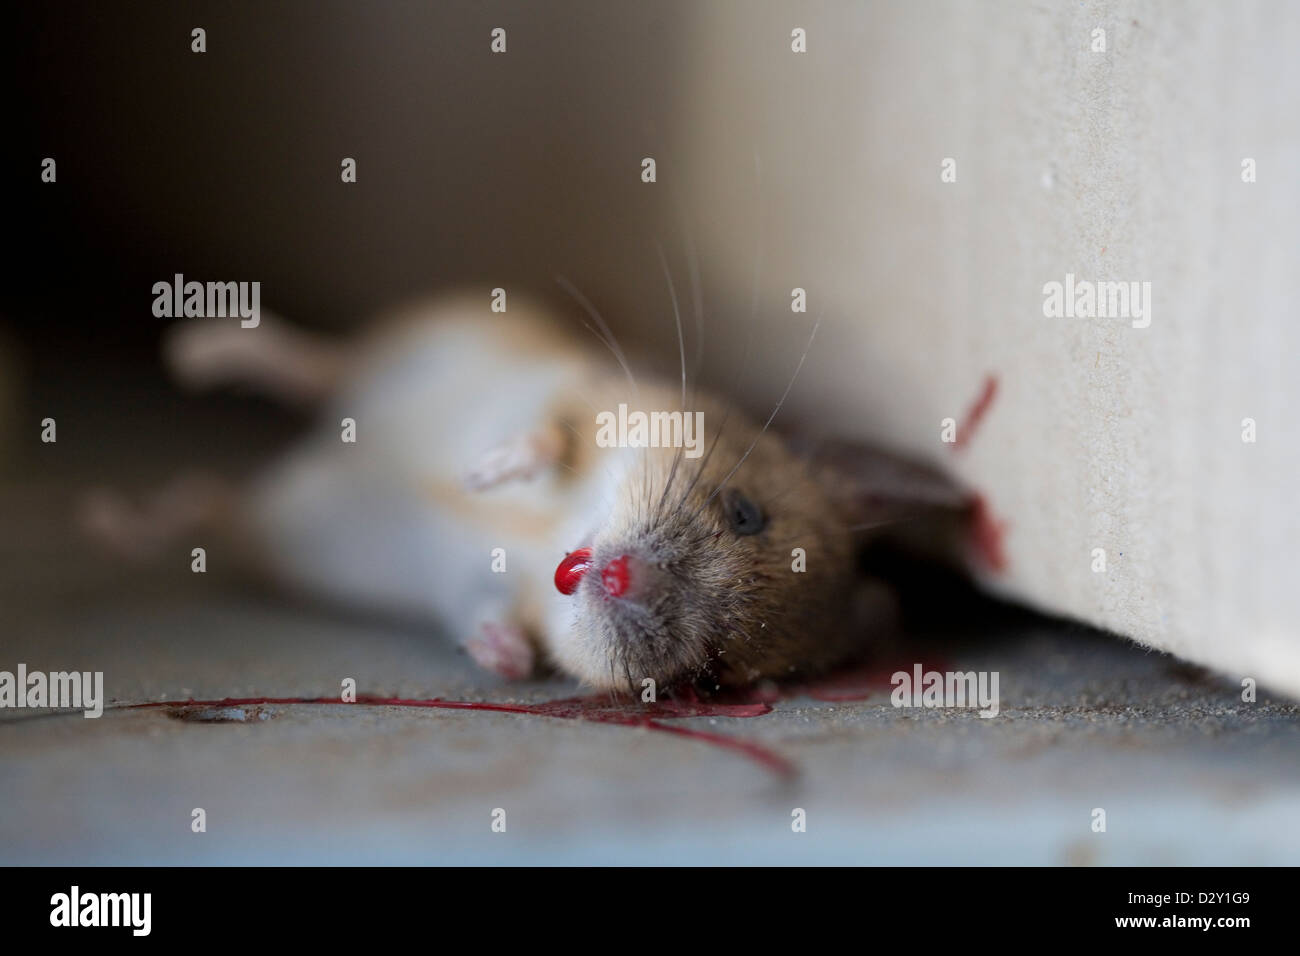 Une maison commune de la souris (Mus musculus) gisant mort dans un piège à souris en bois traditionnel. Banque D'Images